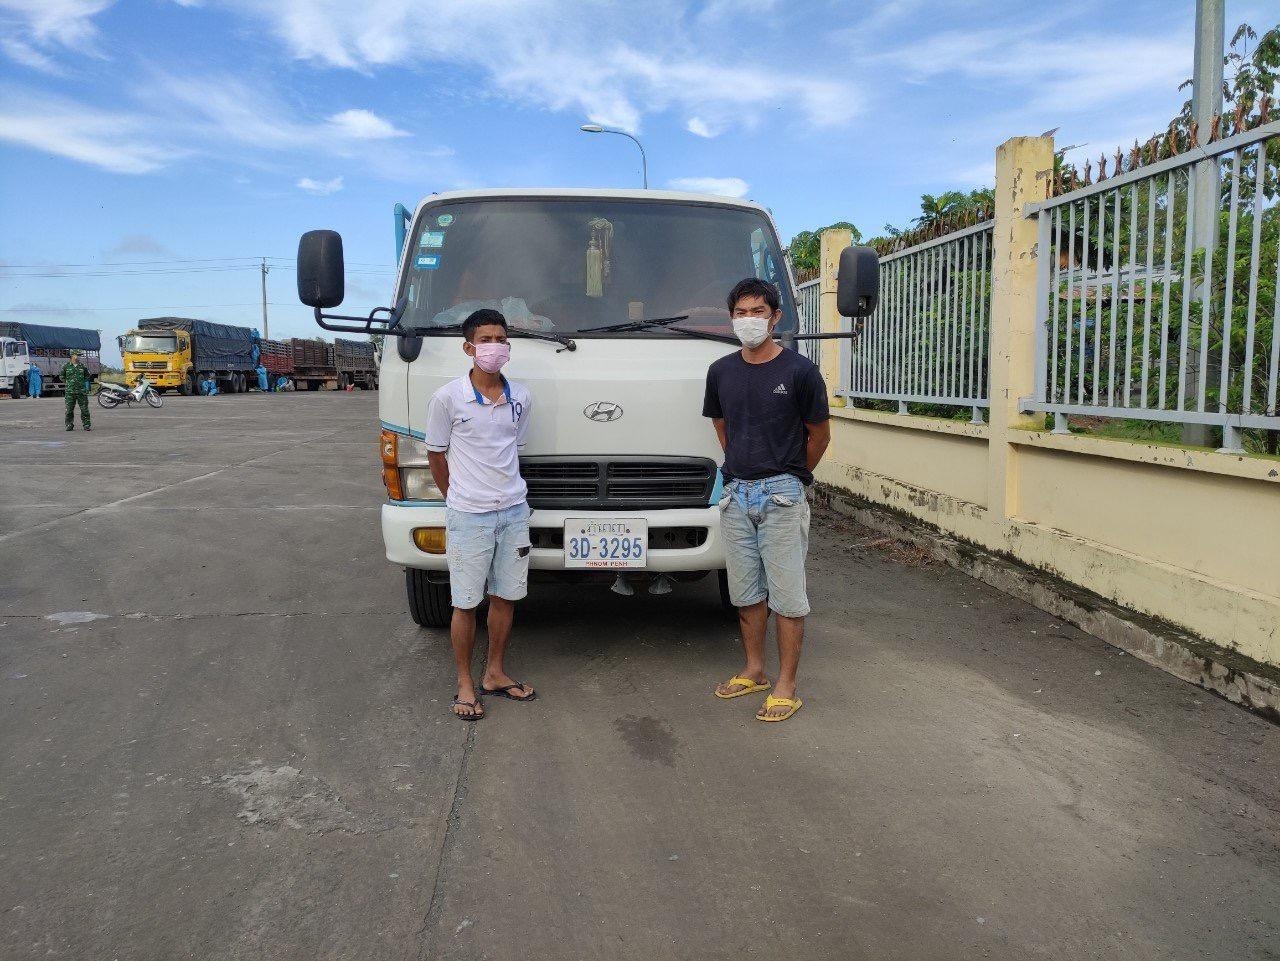 Tang vật và 2 đối tượng vận chuyển 24kg ma túy từ Campuchia về Việt Nam do Chi cục Hải quan Cửa khẩu Quốc tế Bình Hiệp (Cục Hải quan tỉnh Long An) phối hợp với các lực lượng chức năng phát hiện, bắt giữ rạng sáng ngày 12/11/2021.